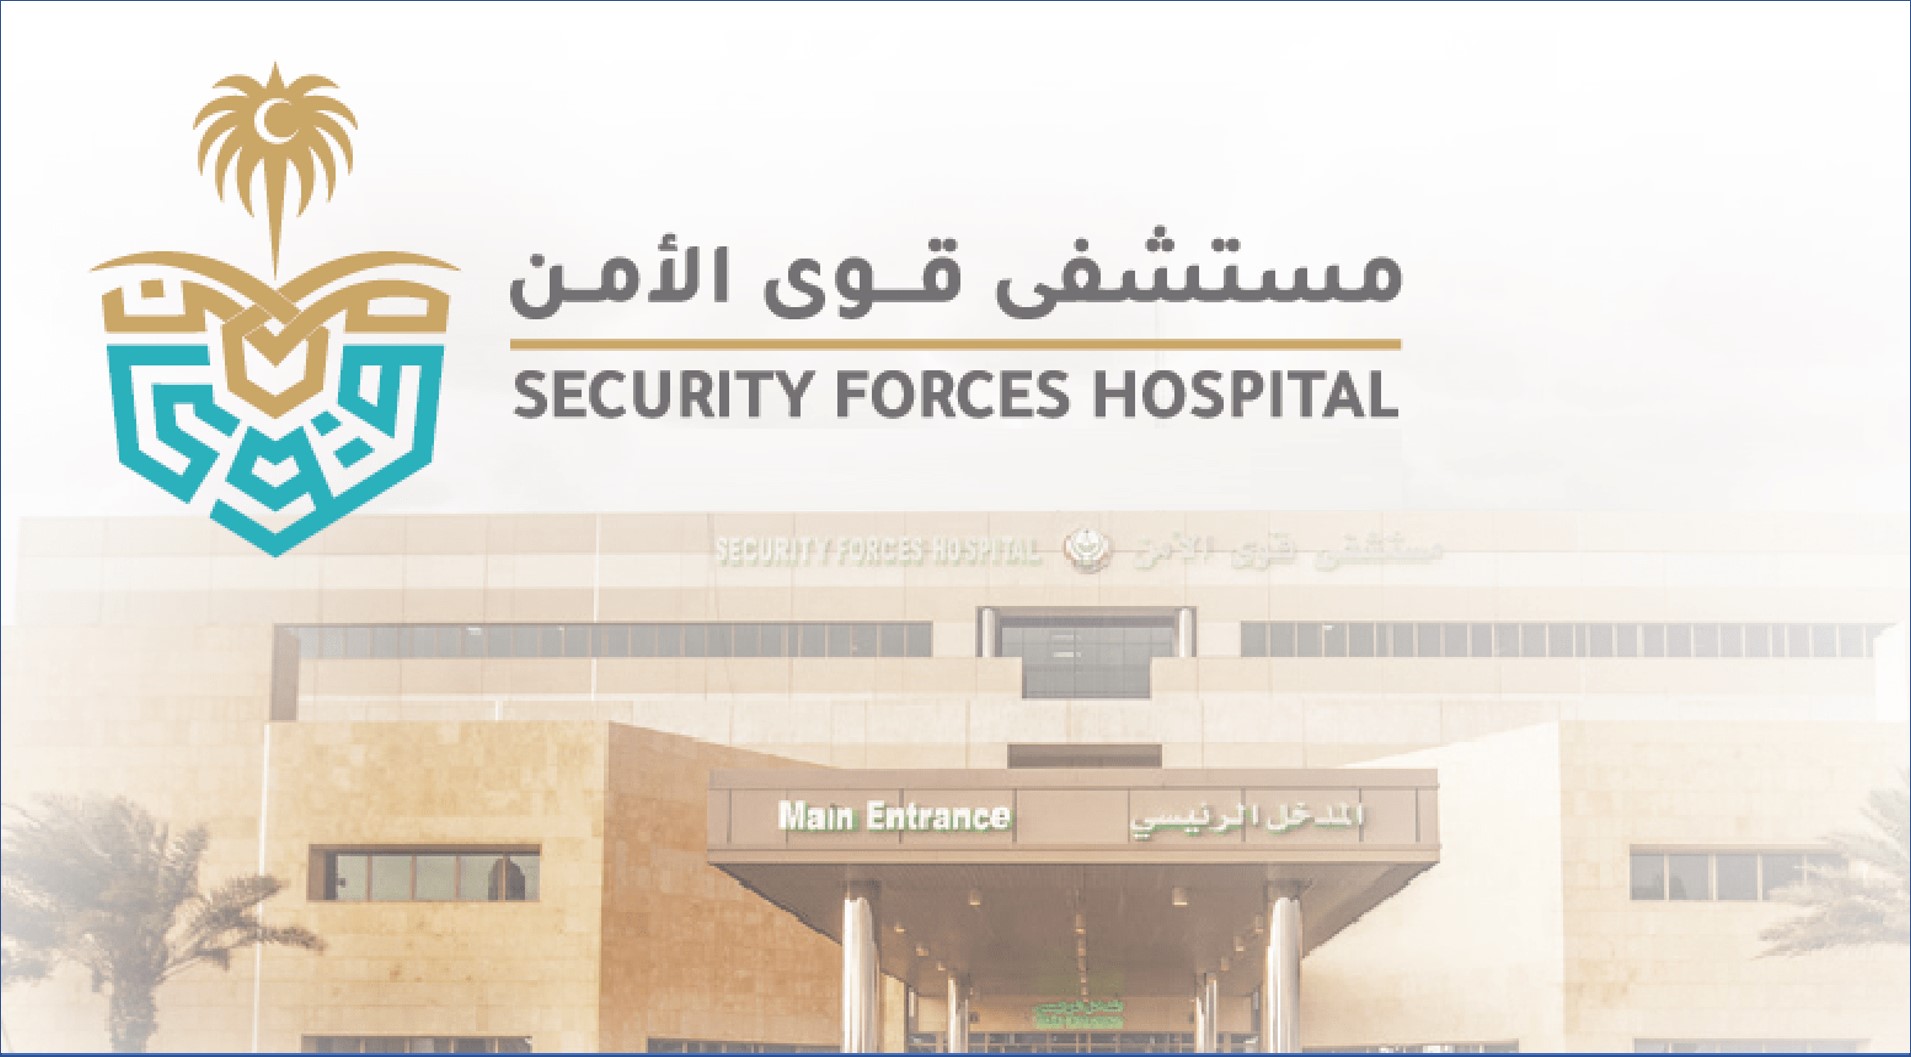 مستشفى قوى الأمن تعلن اليوم عن وظائف إدارية للرجال والنساء